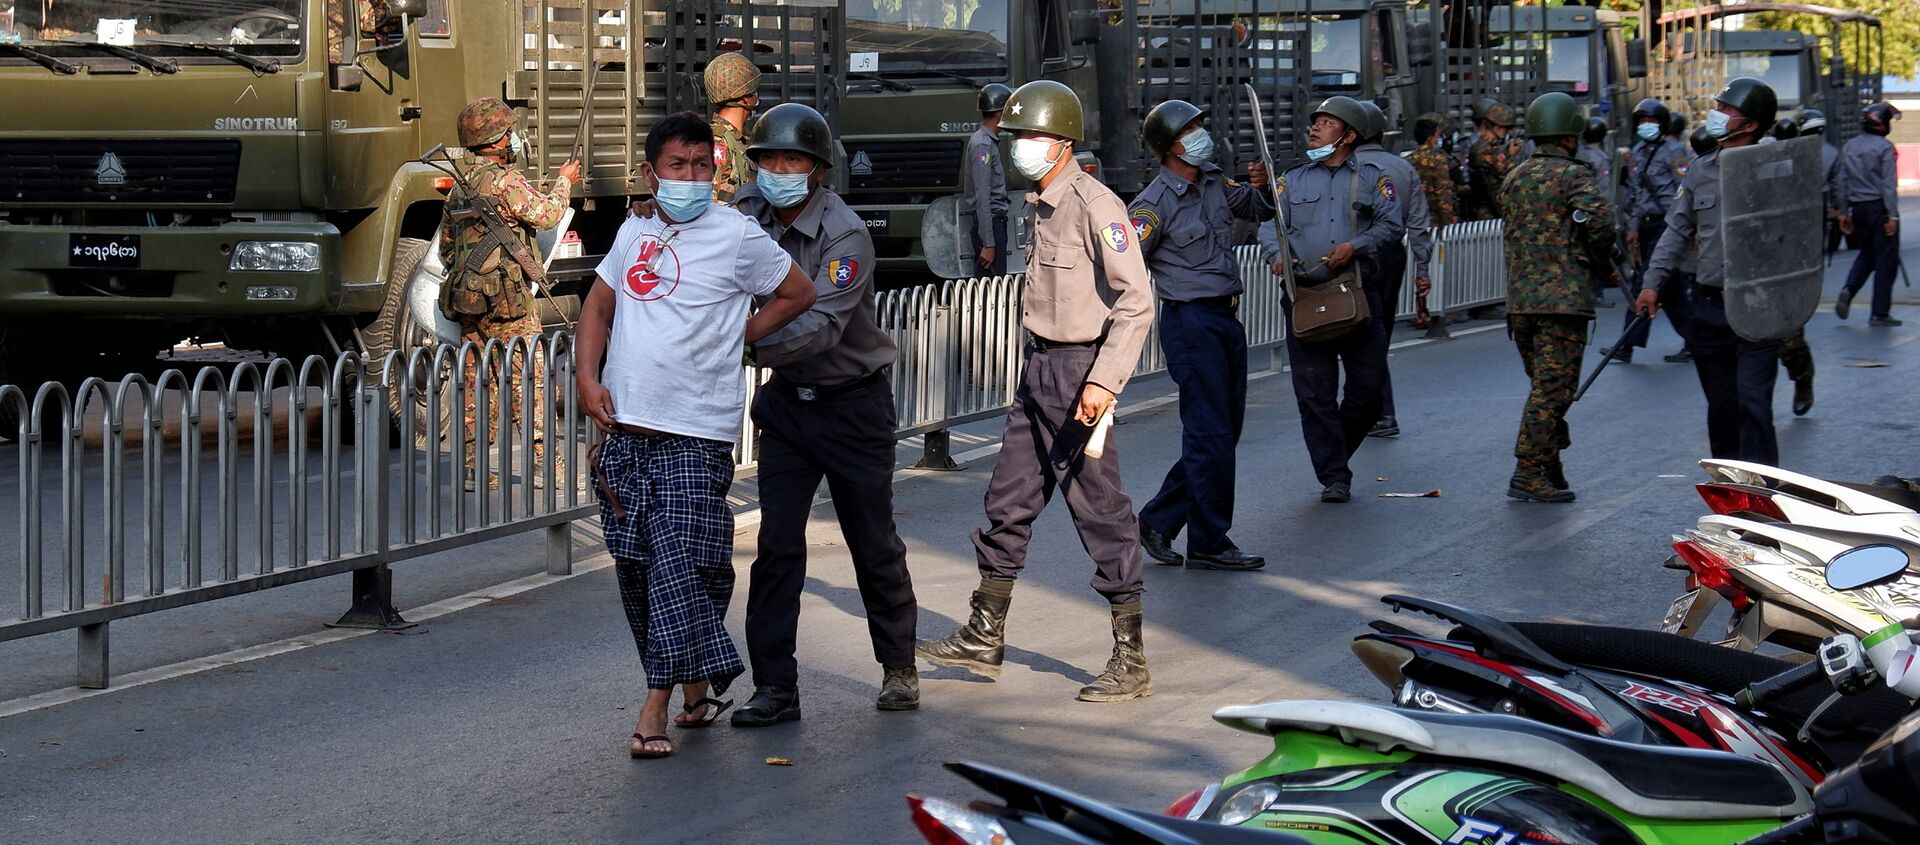 Cảnh sát bắt giữ một người đàn ông trong cuộc biểu tình chống đảo chính quân sự ở Mandalay, Myanmar. - Sputnik Việt Nam, 1920, 15.02.2021